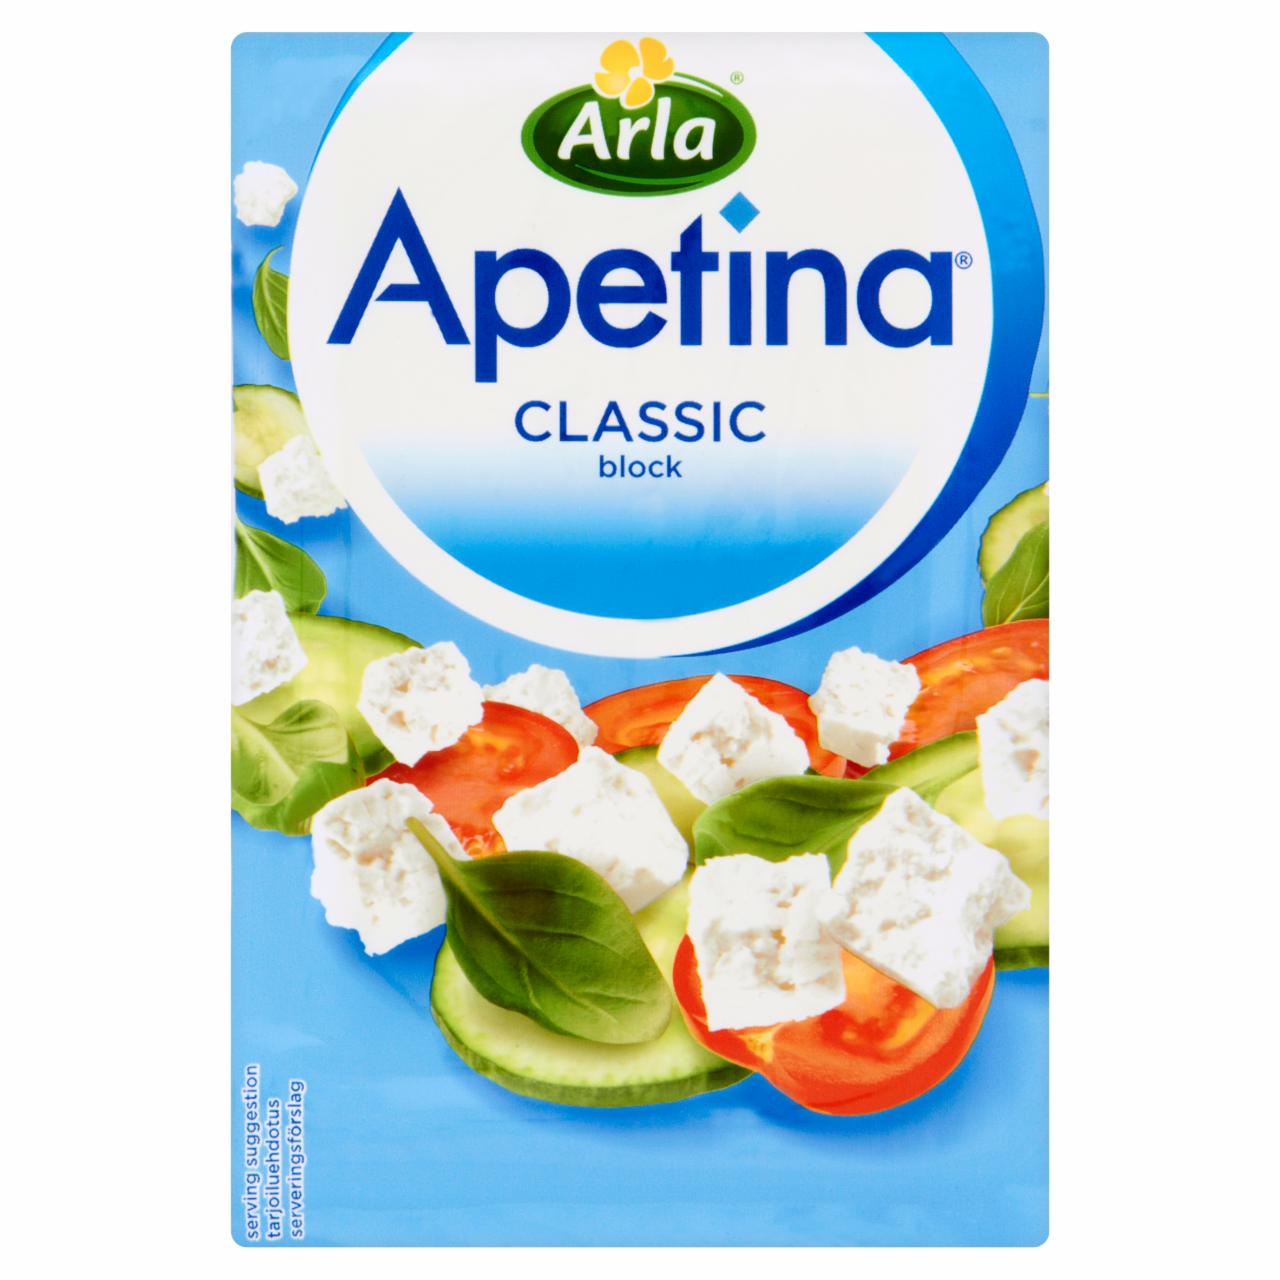 Zdjęcia - Apetina Classic Ser typu śródziemnomorskiego w bloczku 150 g